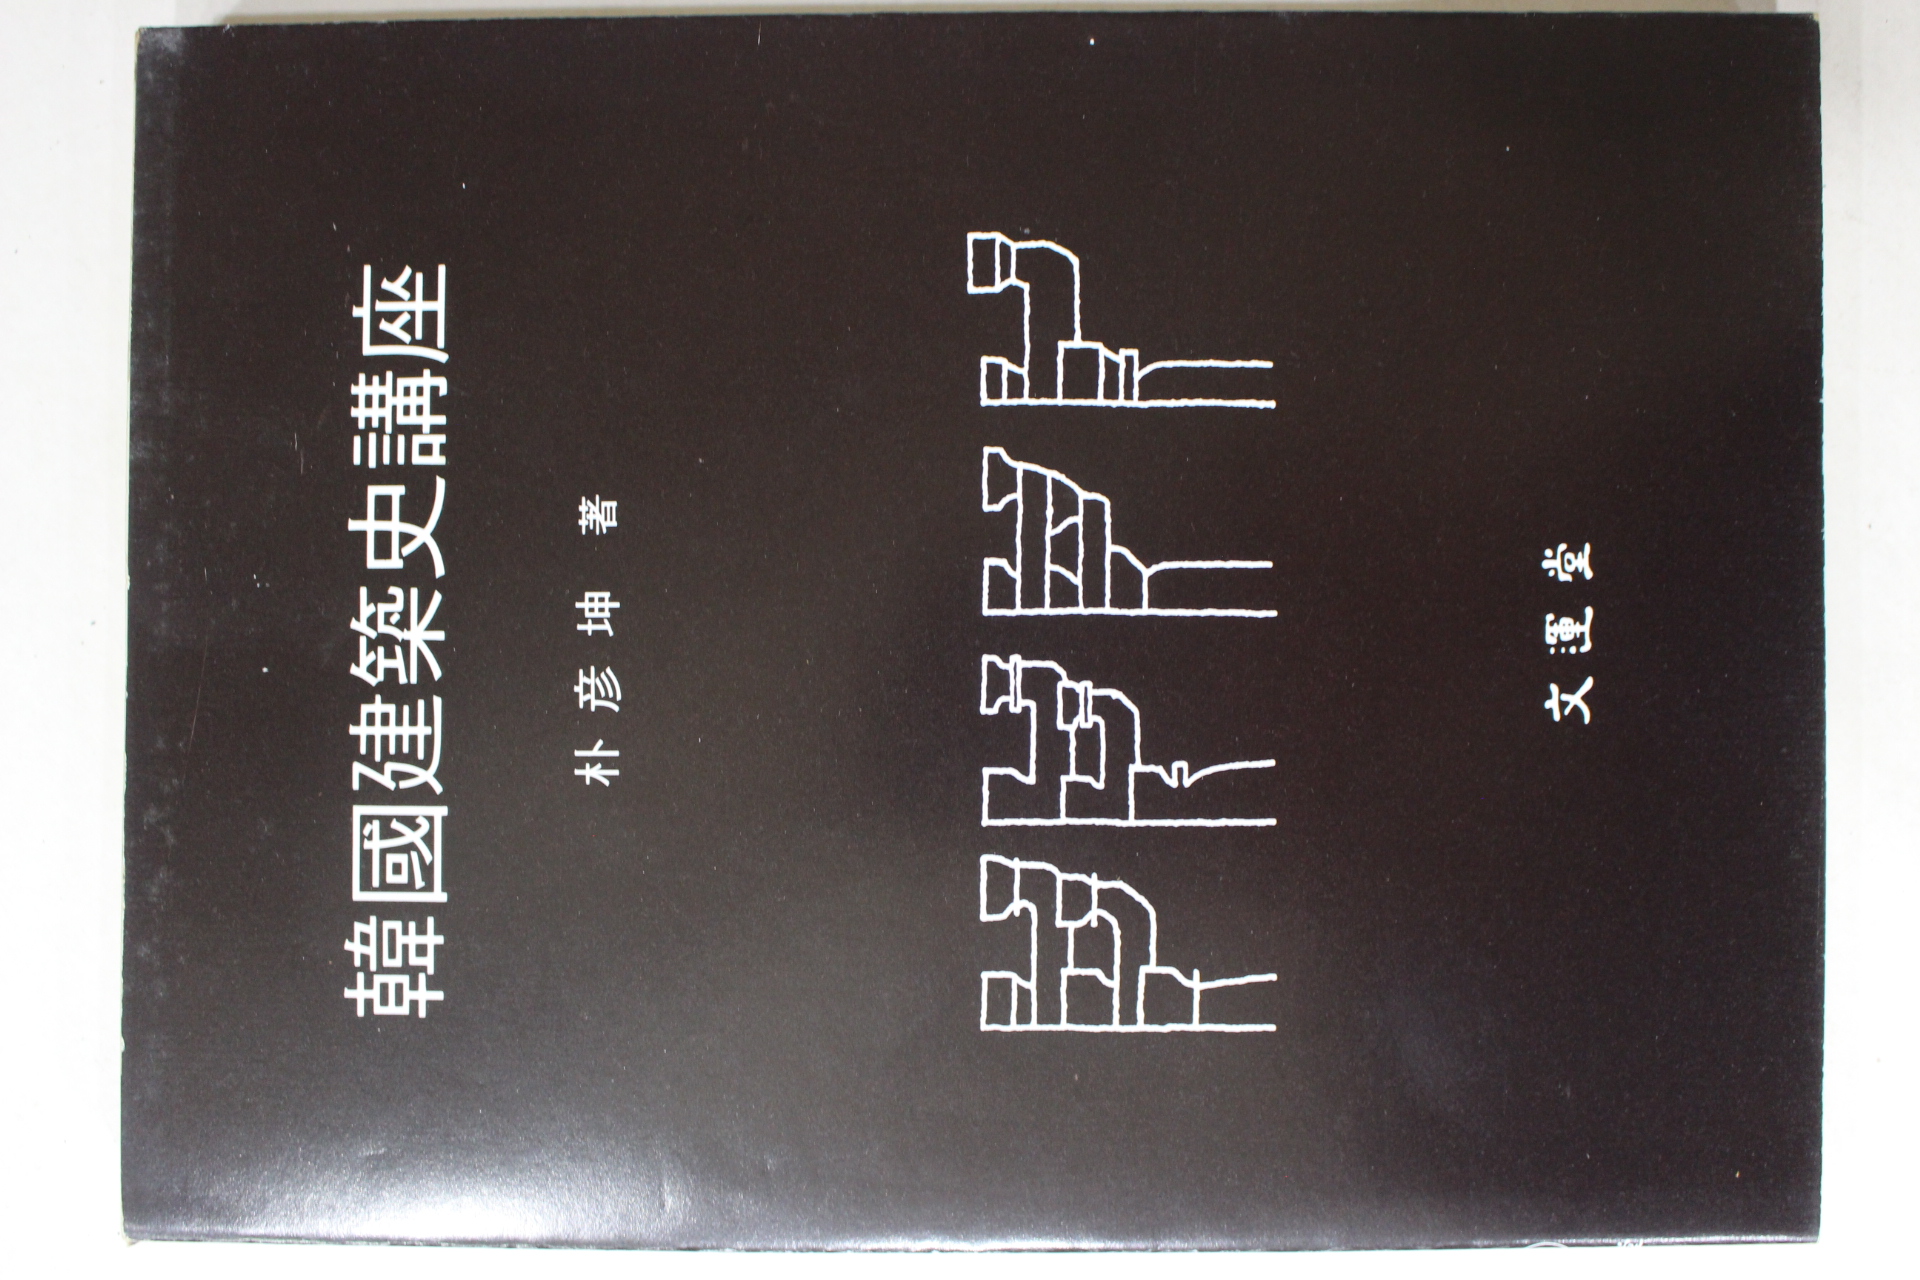 1987년 박언곤(朴彦坤) 한국건축사강좌(韓國建築史講座)